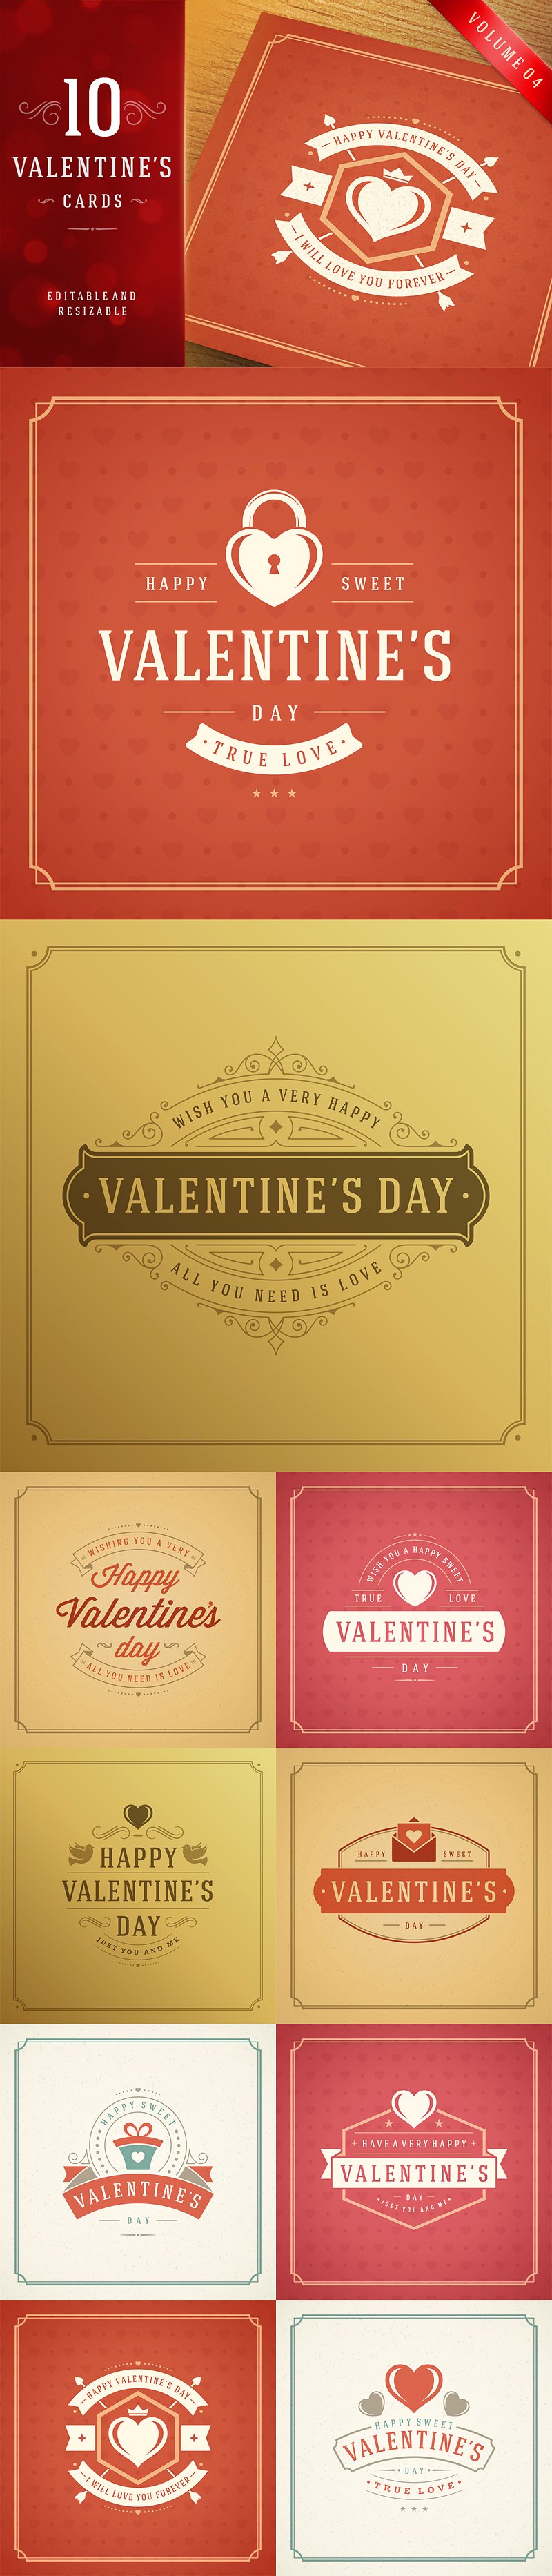 情人节主题矢量插画设计素材 Valentines-Day-B